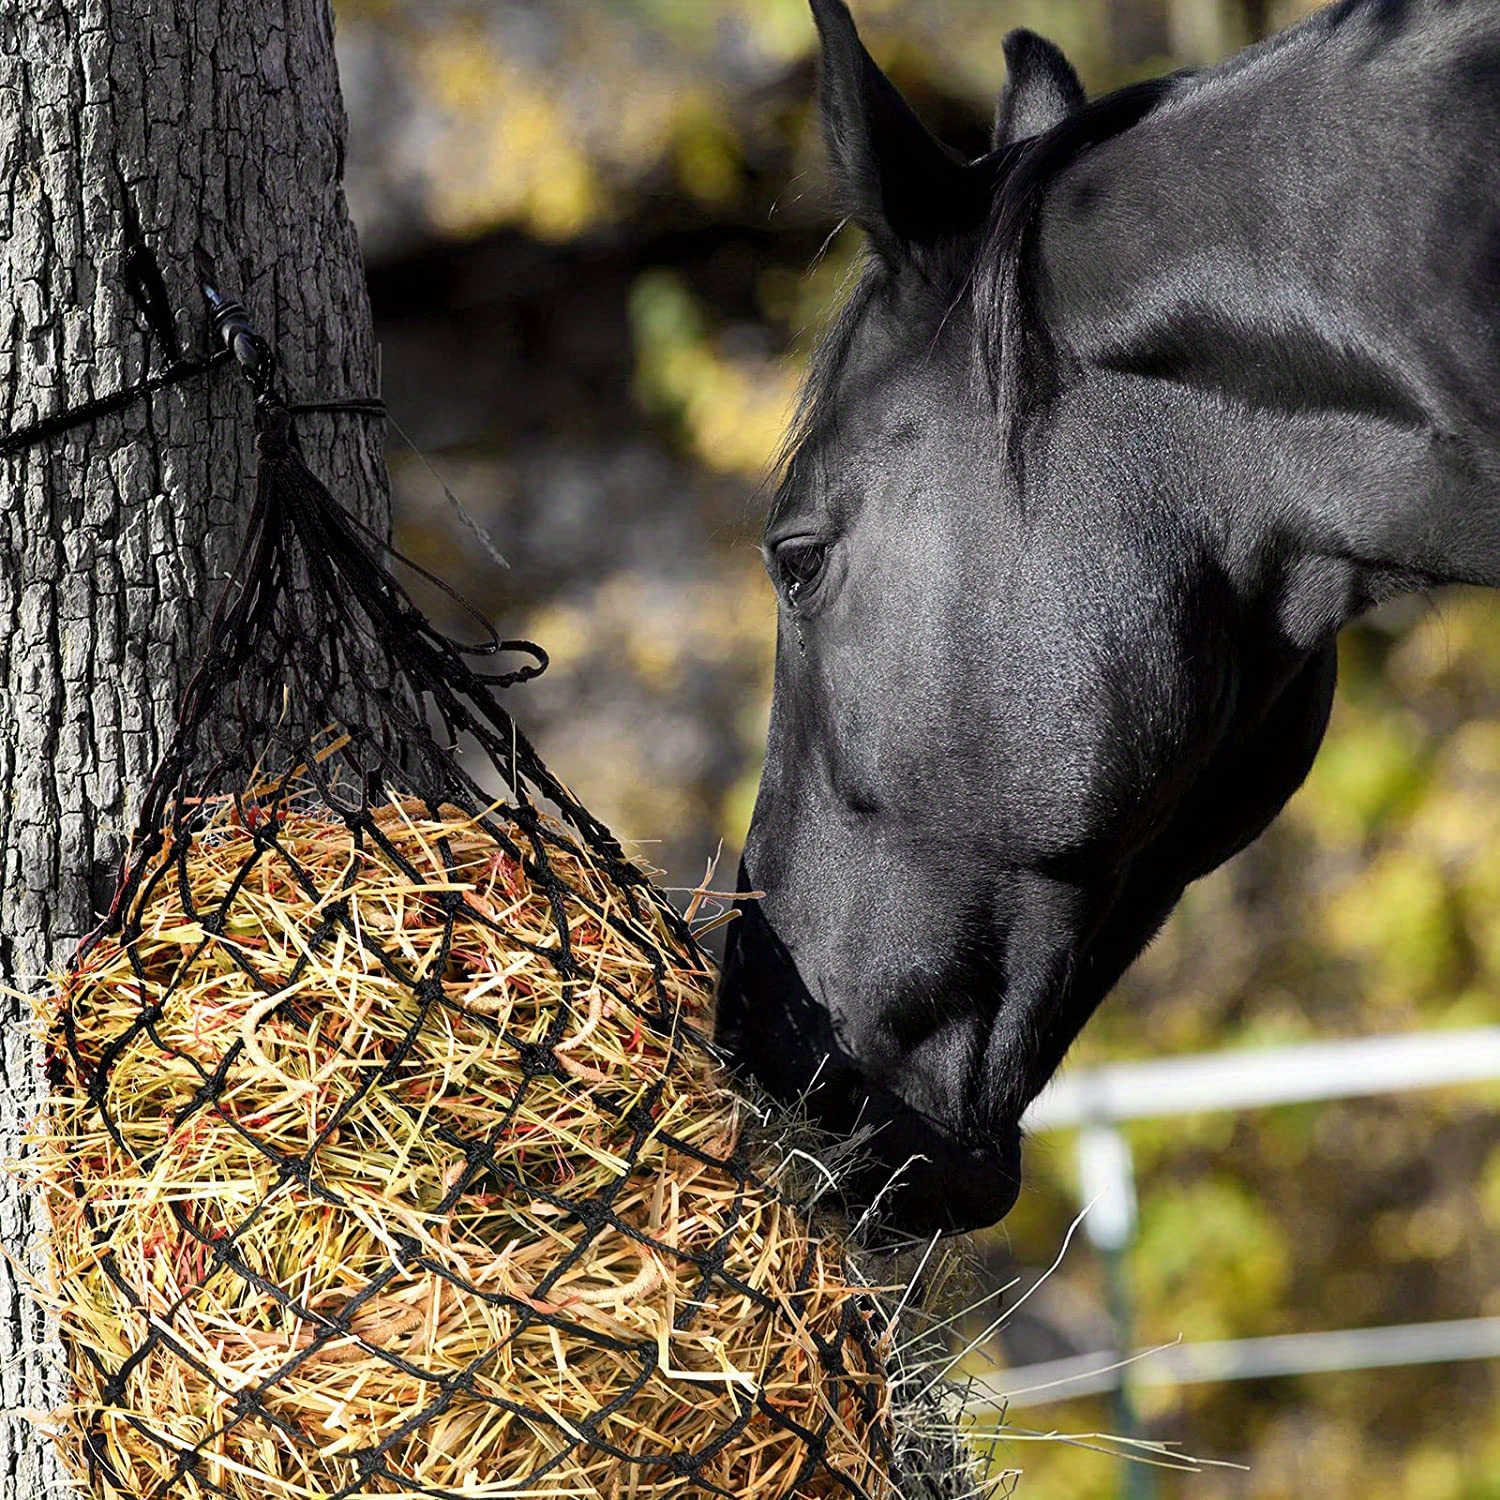 Aoneky Filet à foin pour chevaux à alimentation lente - Convient